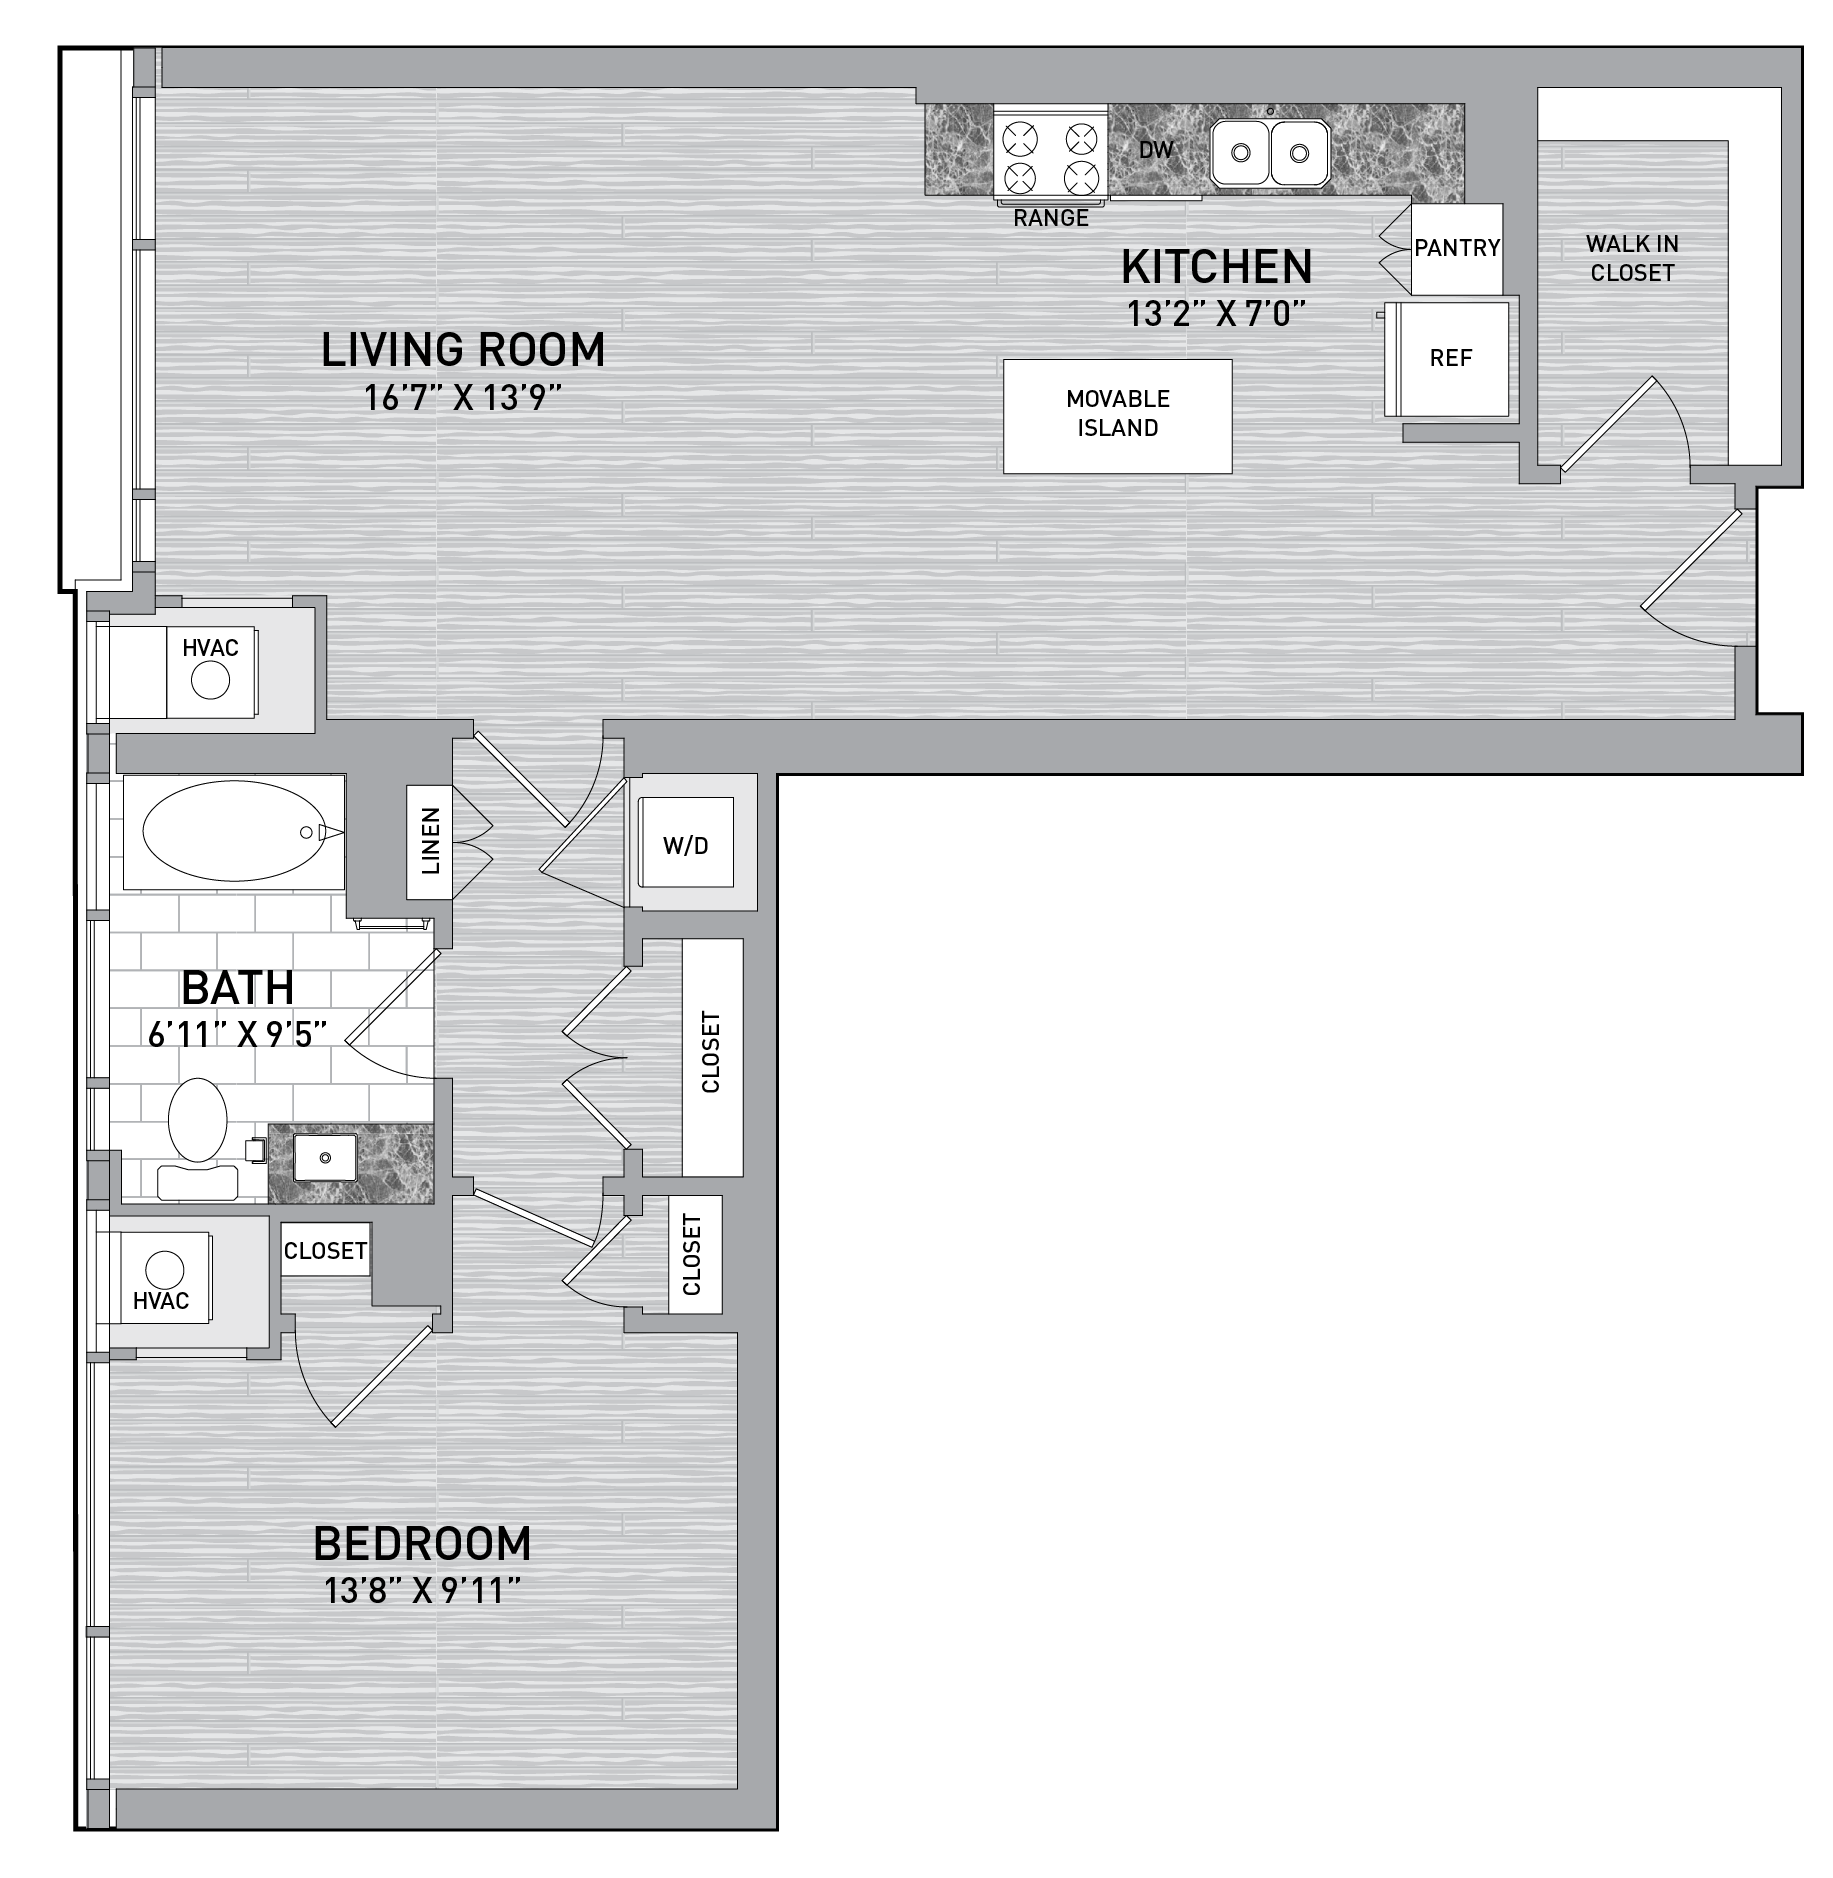 floorplan image of unit id 0232